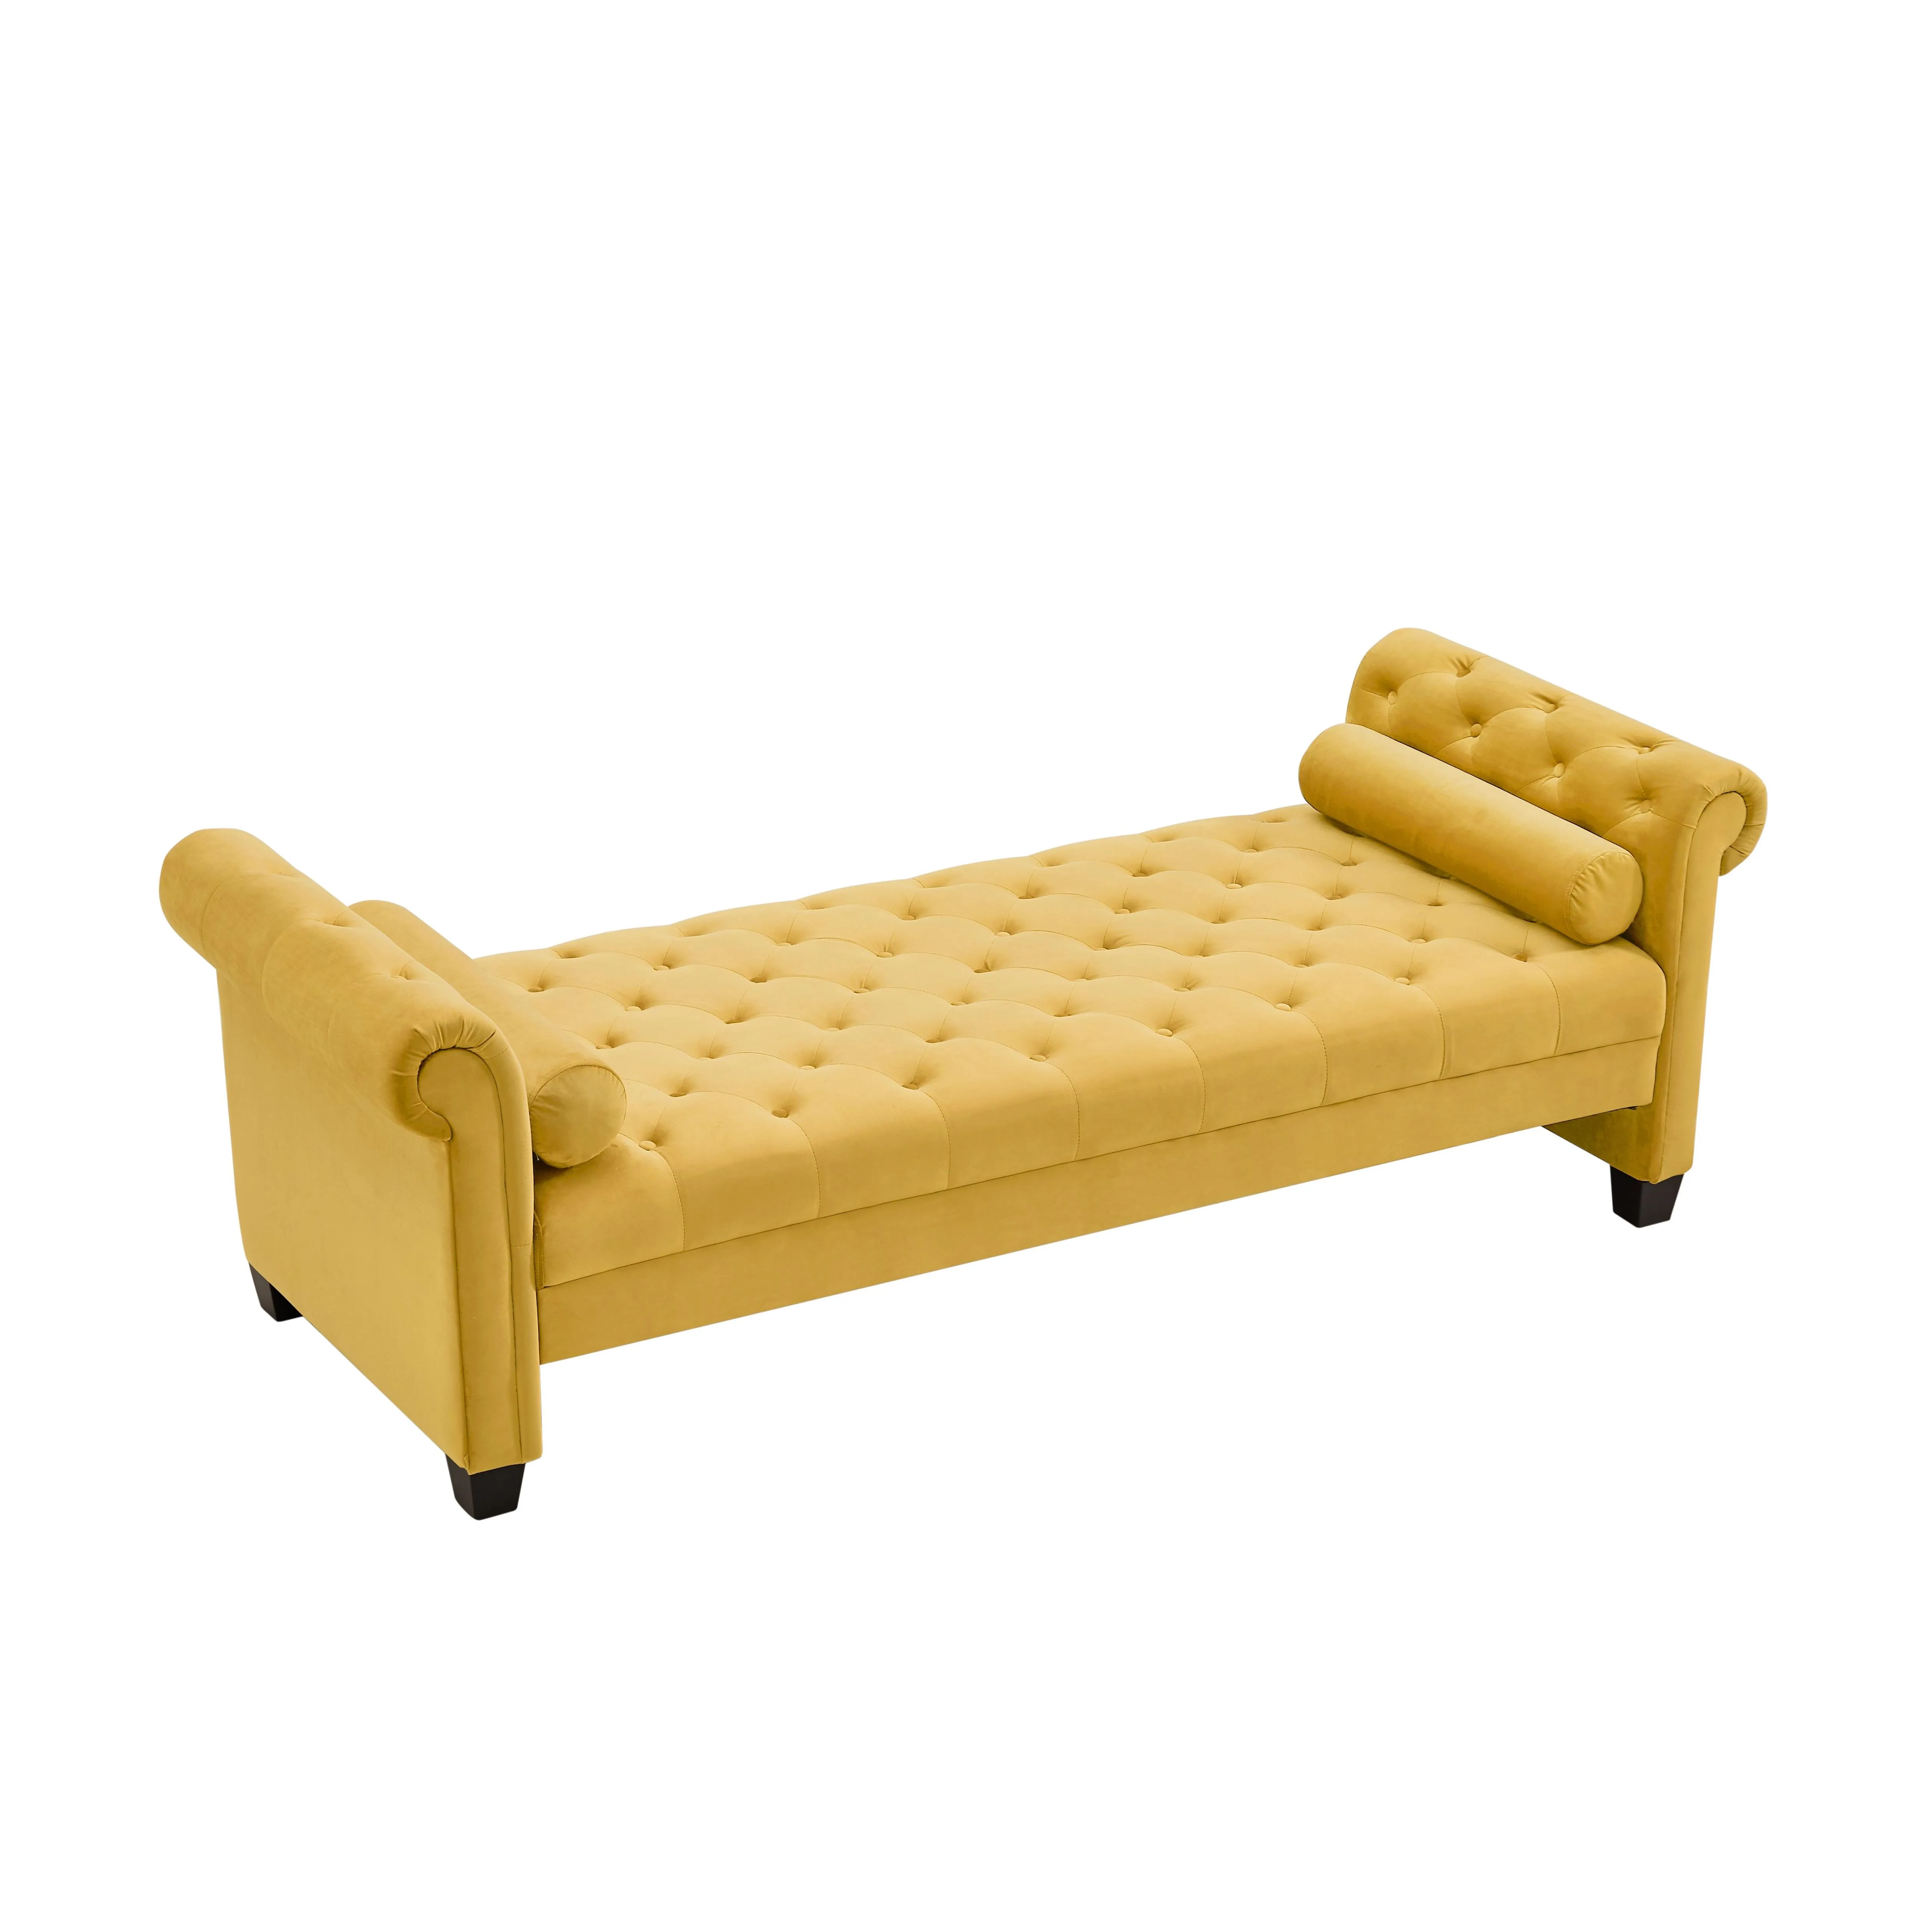 Rectangular Large Sofa Stool,Yellow